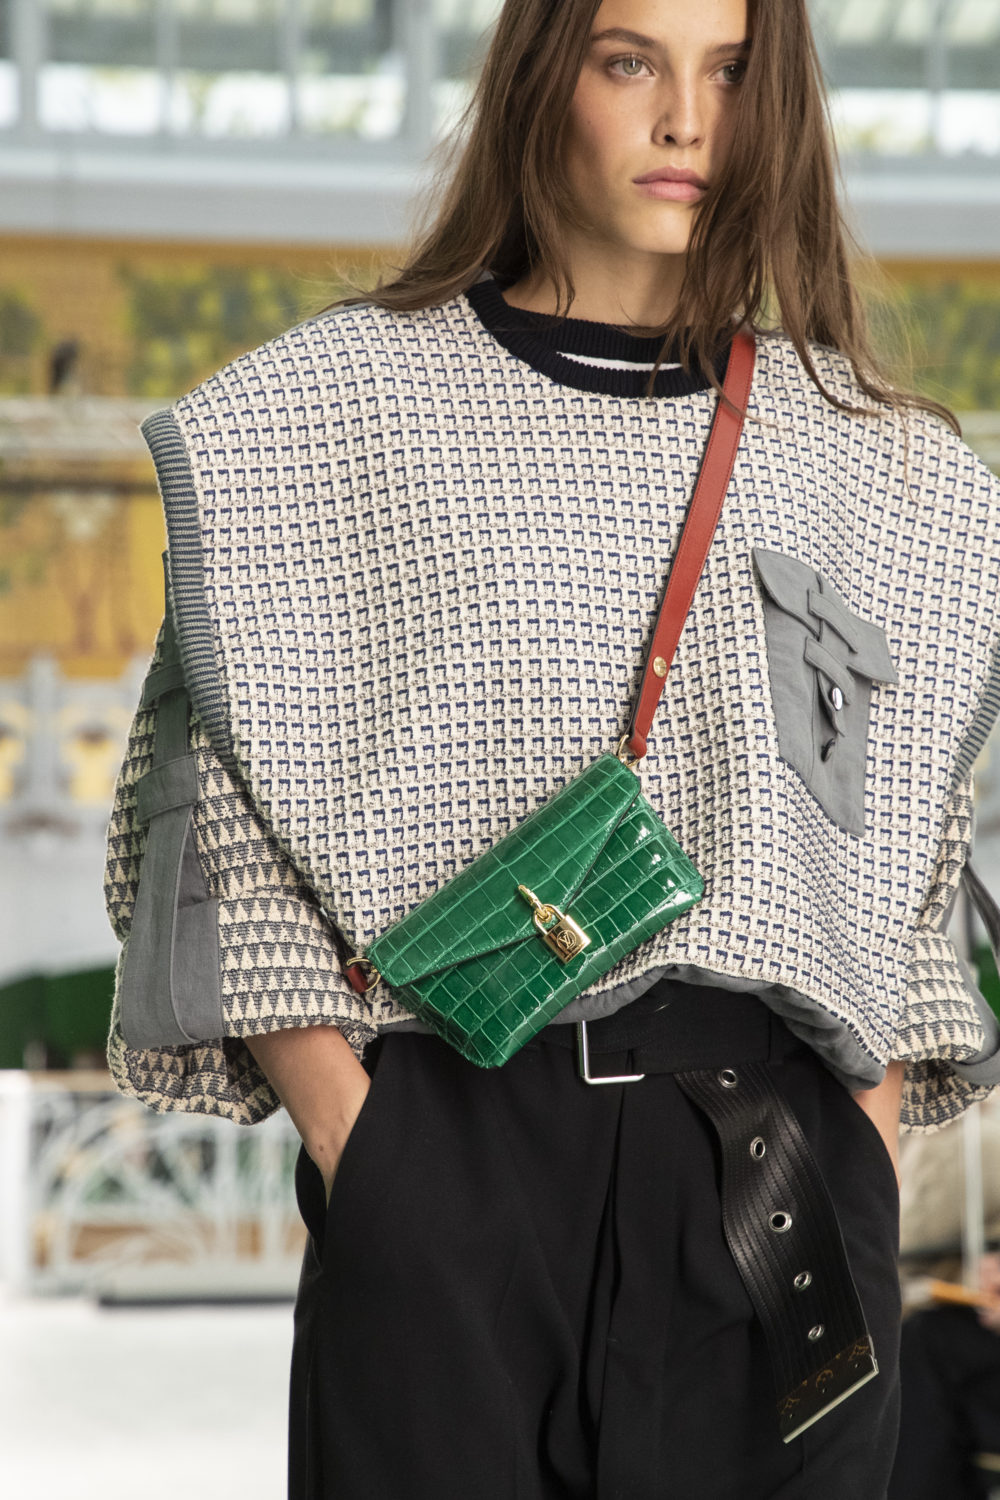 How A Cut Up Louis Vuitton Belt Bag Is Restored